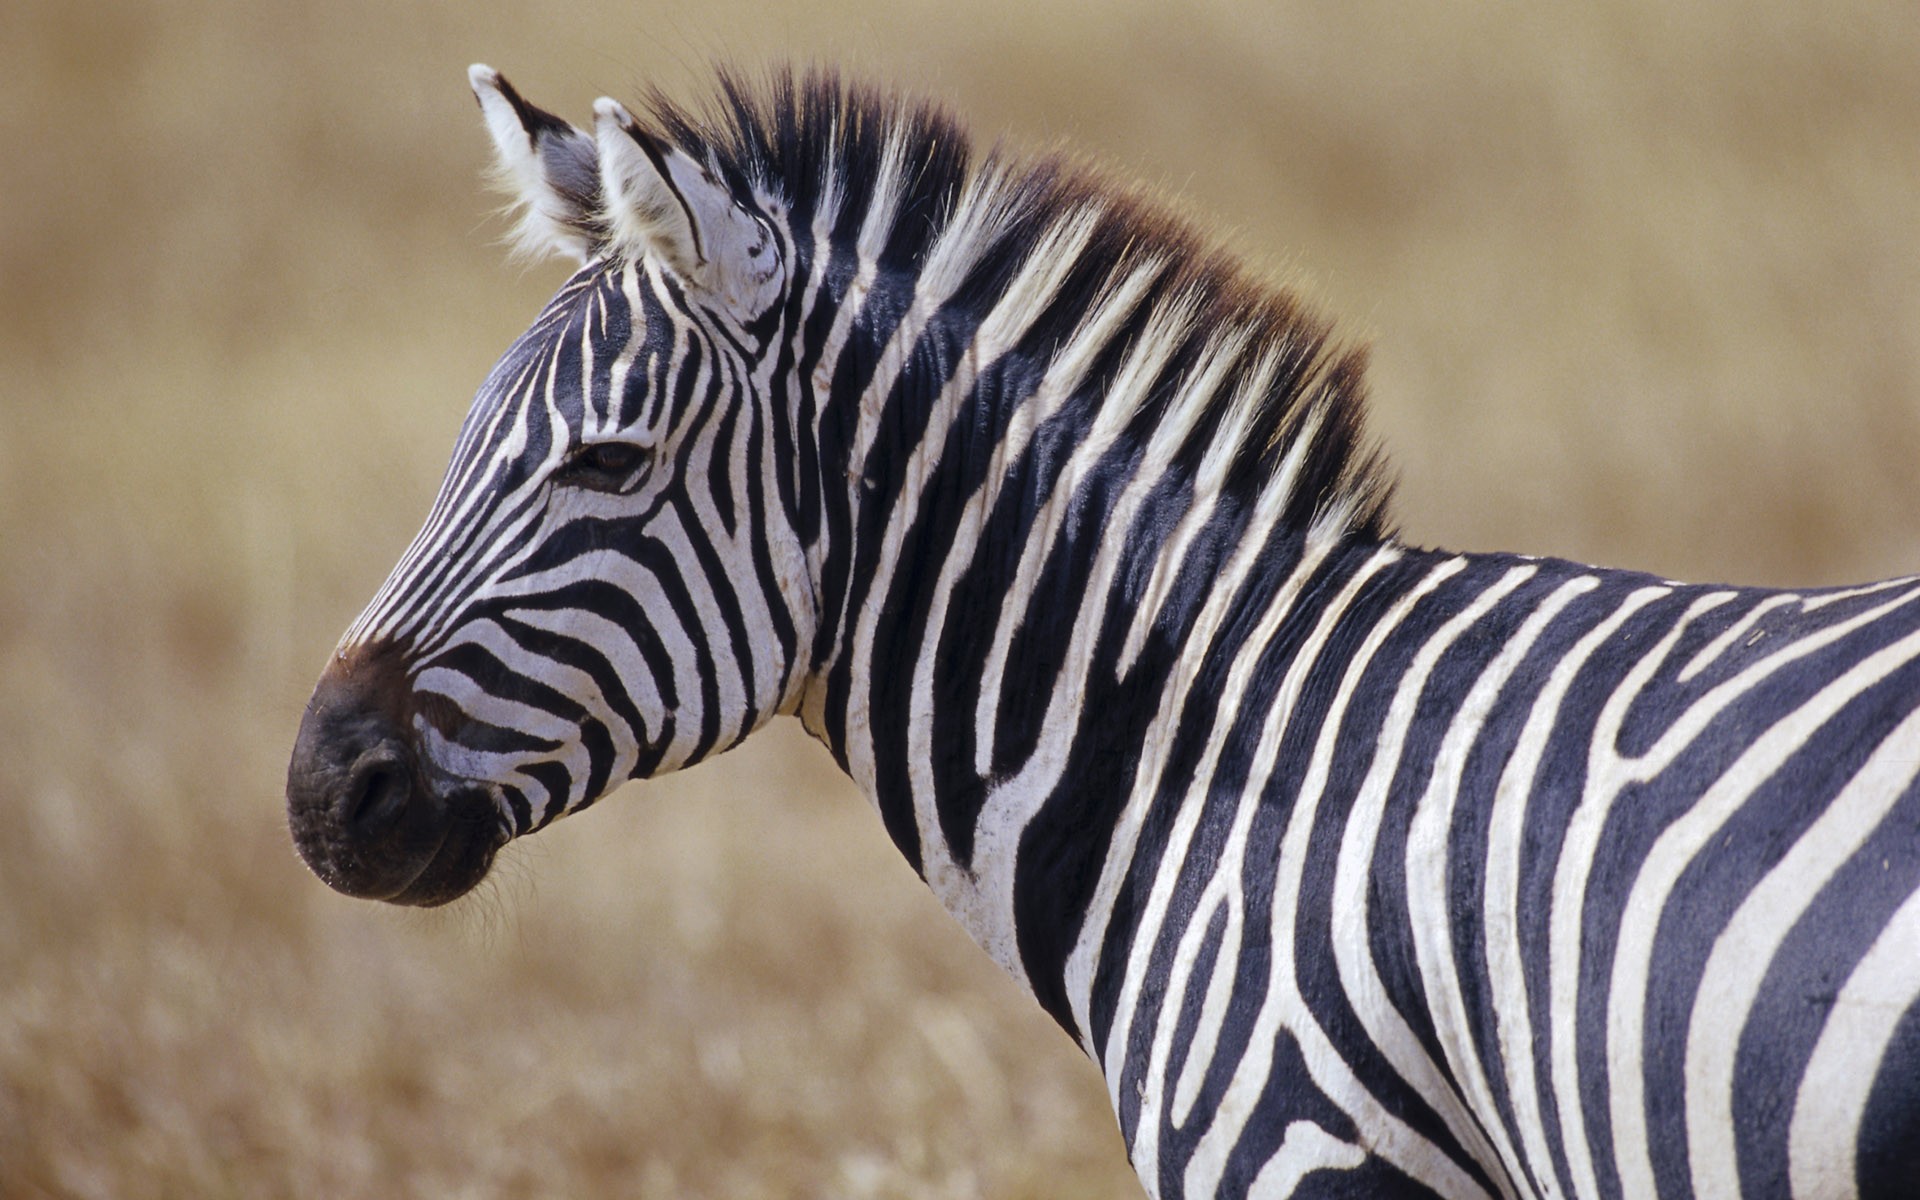 wildlife, zebras, Africa, Wild Africa - desktop wallpaper